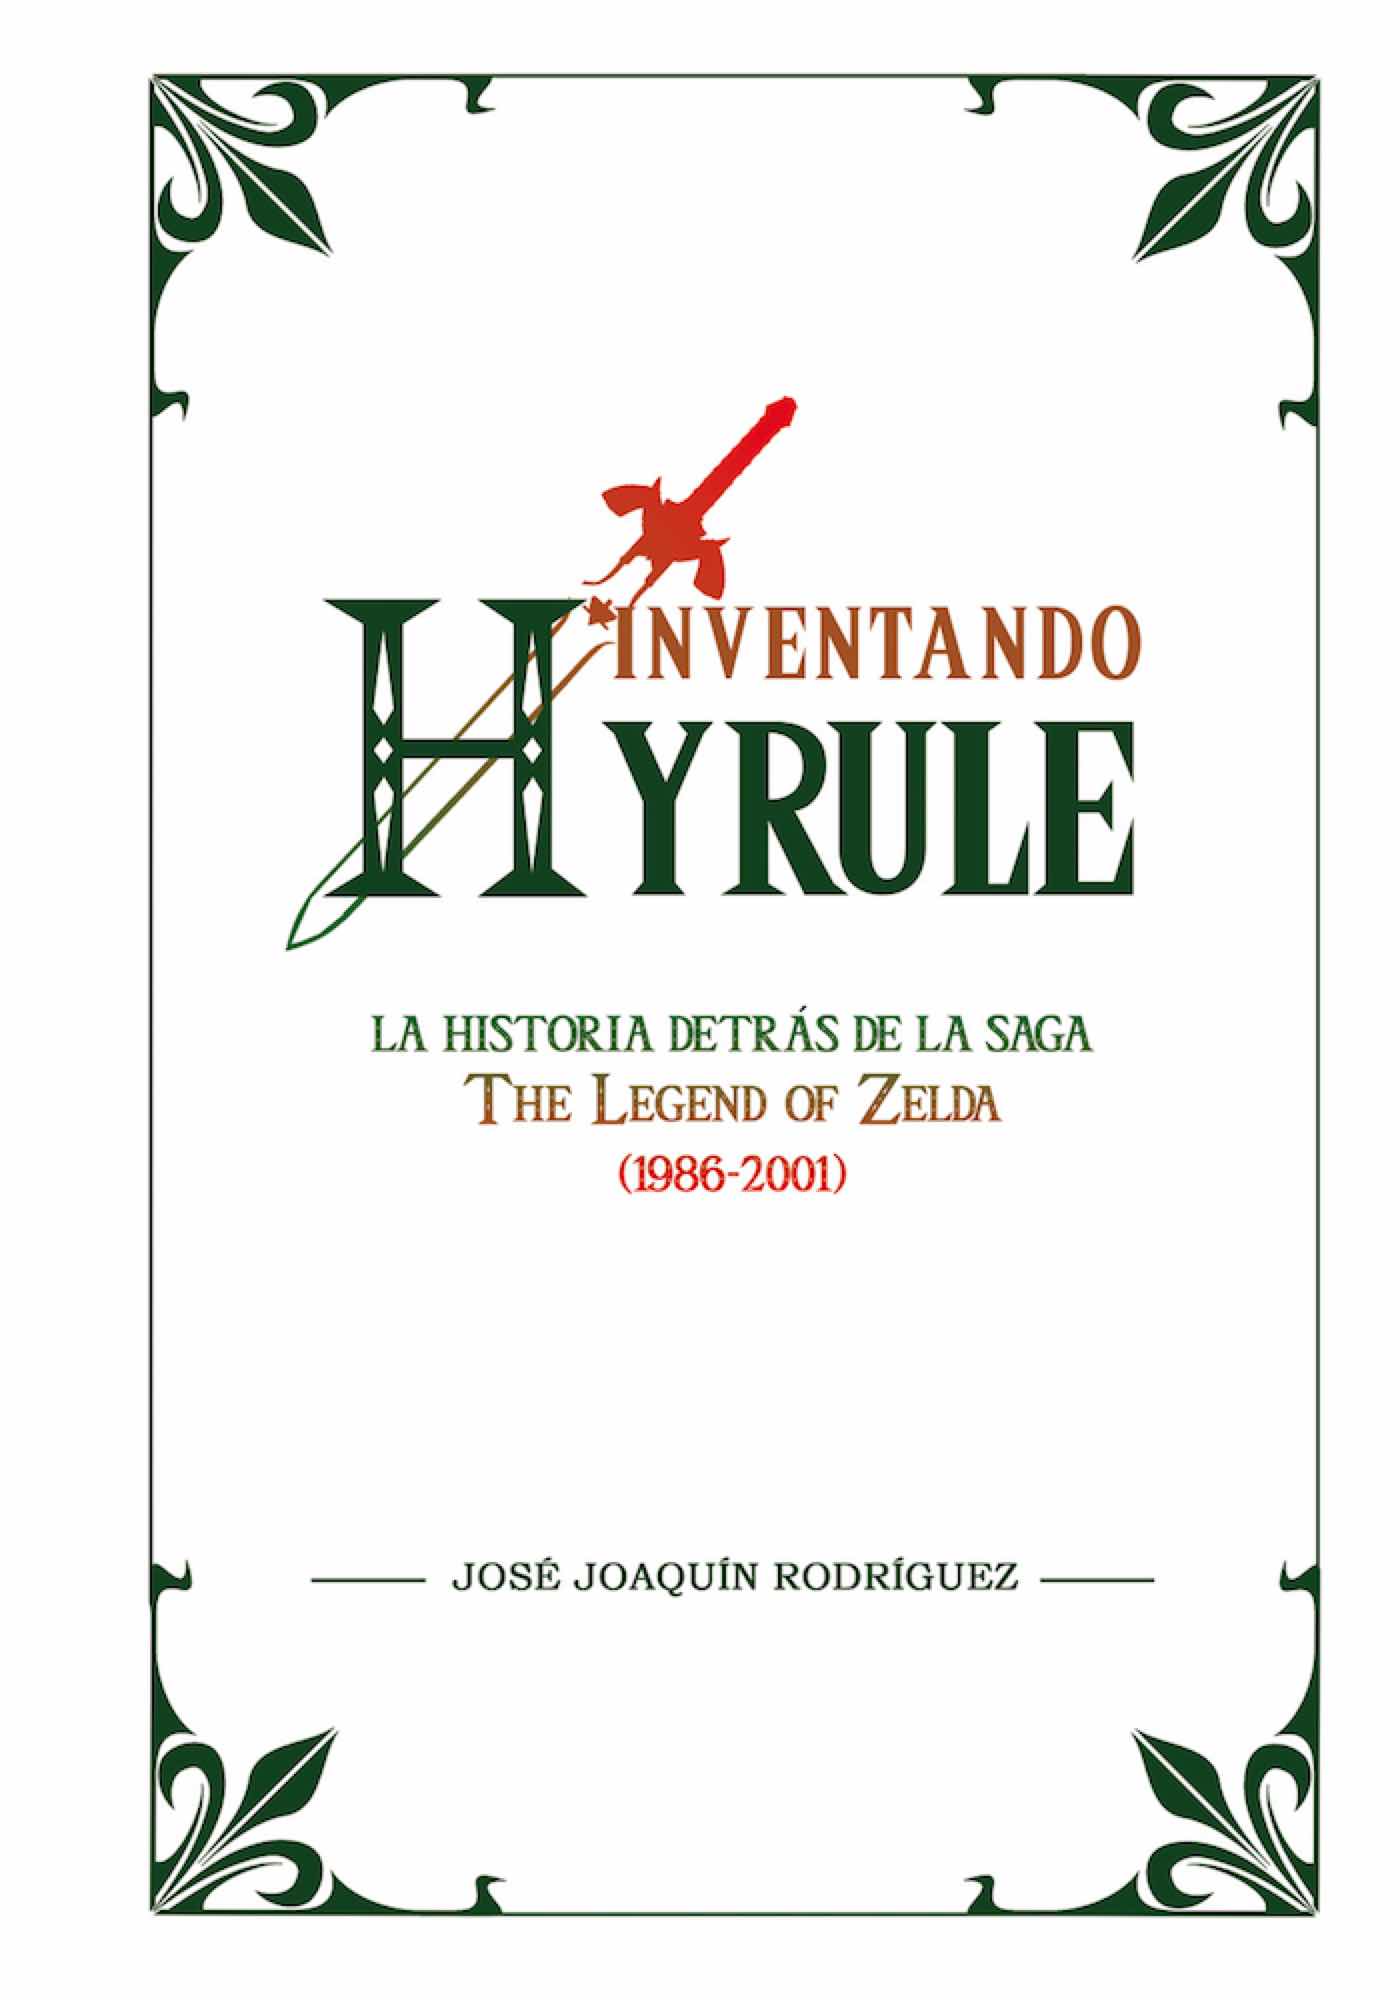 INVENTANDO HYRULE: LA HISTORIA DETRAS DE LA SAGA THE LEGEND OF ZELDA (1986-2001)